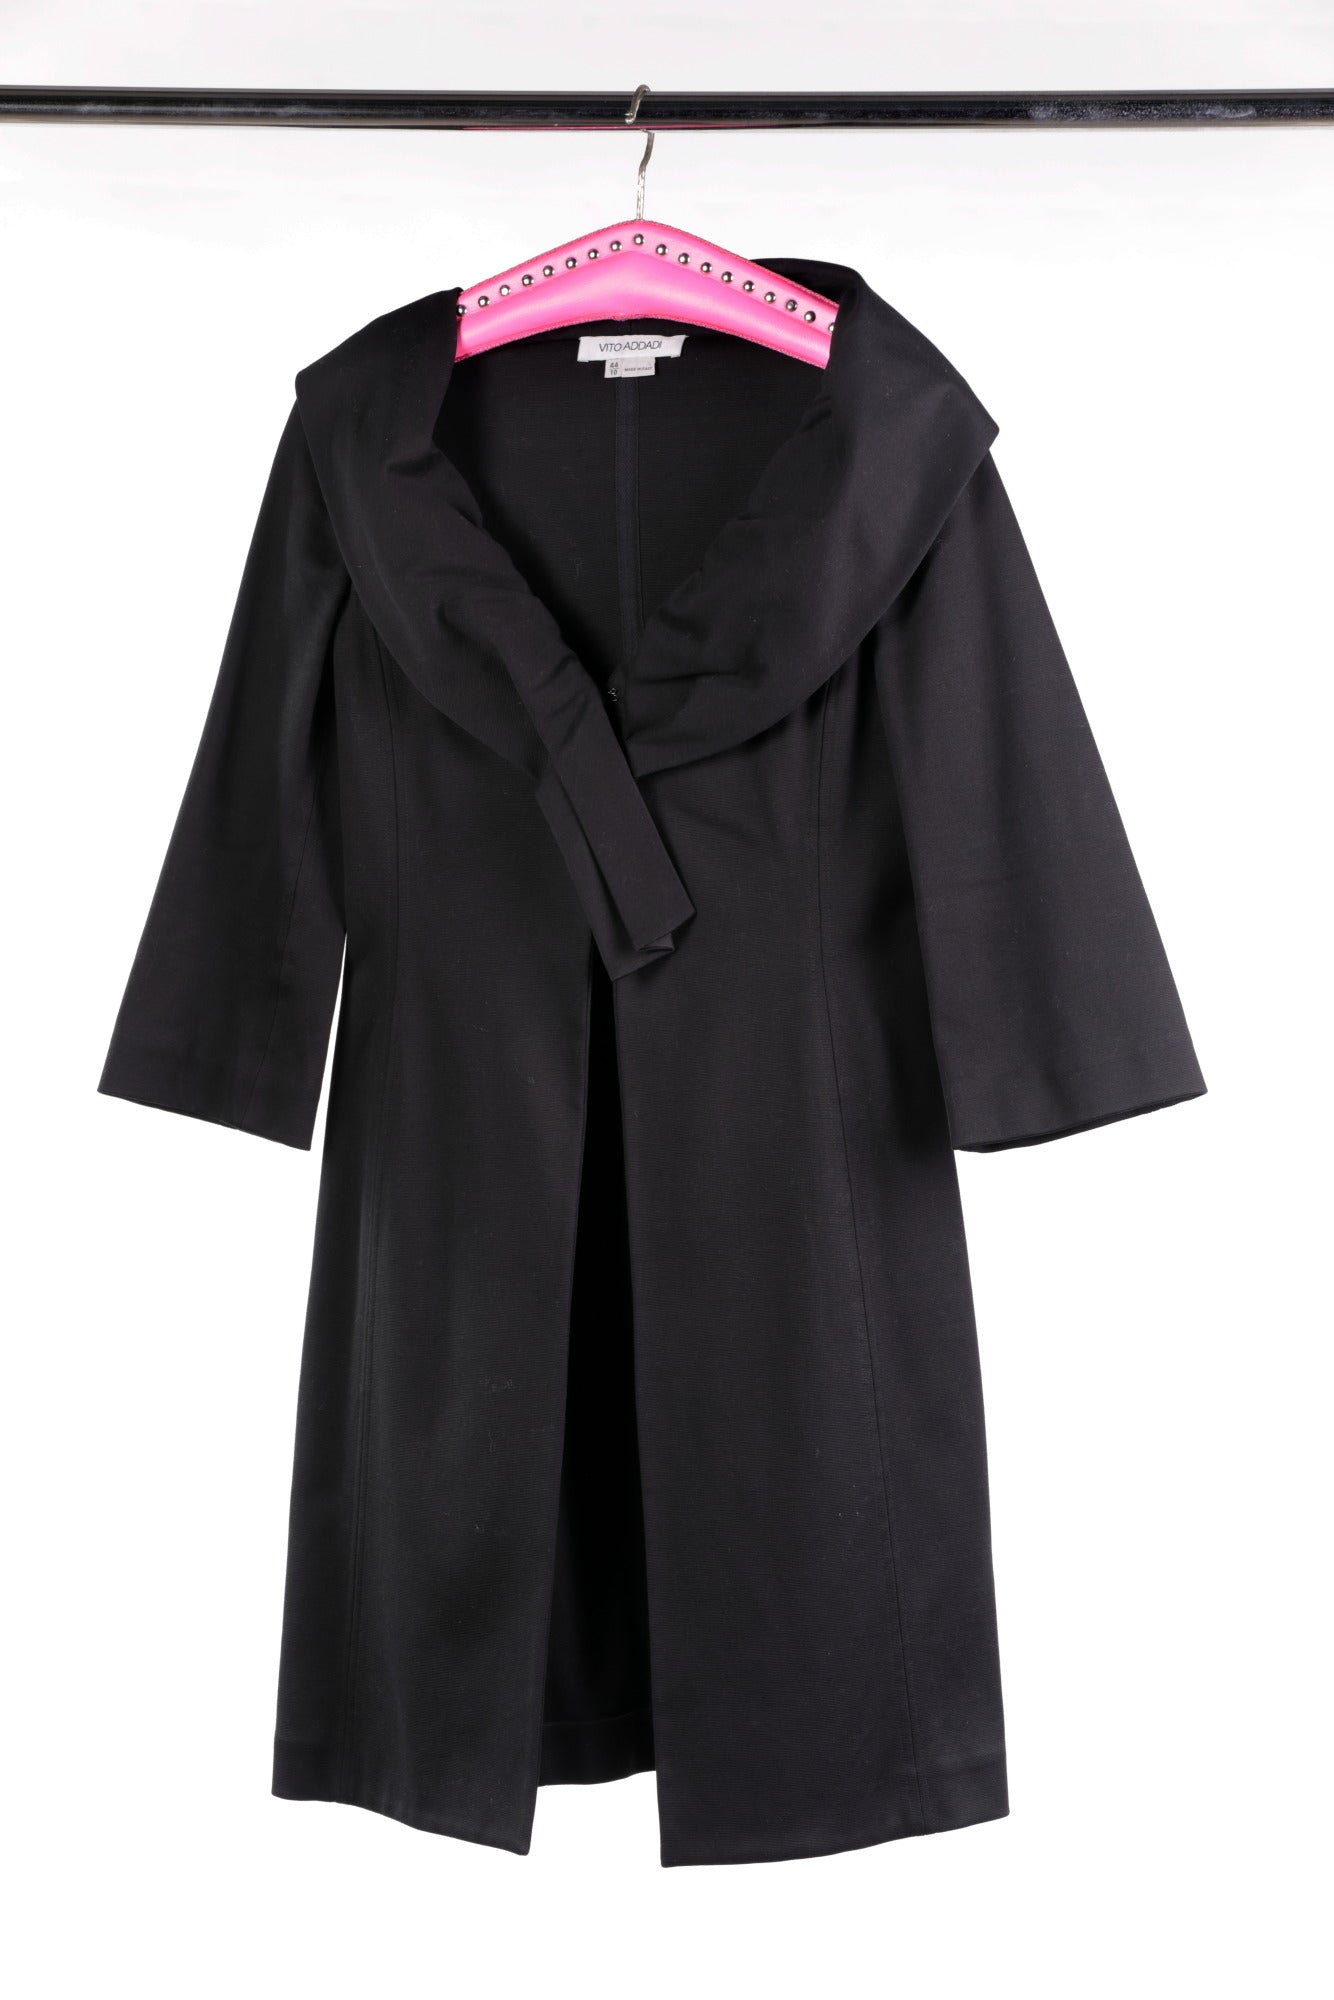 Vito Addadi 50s style coat